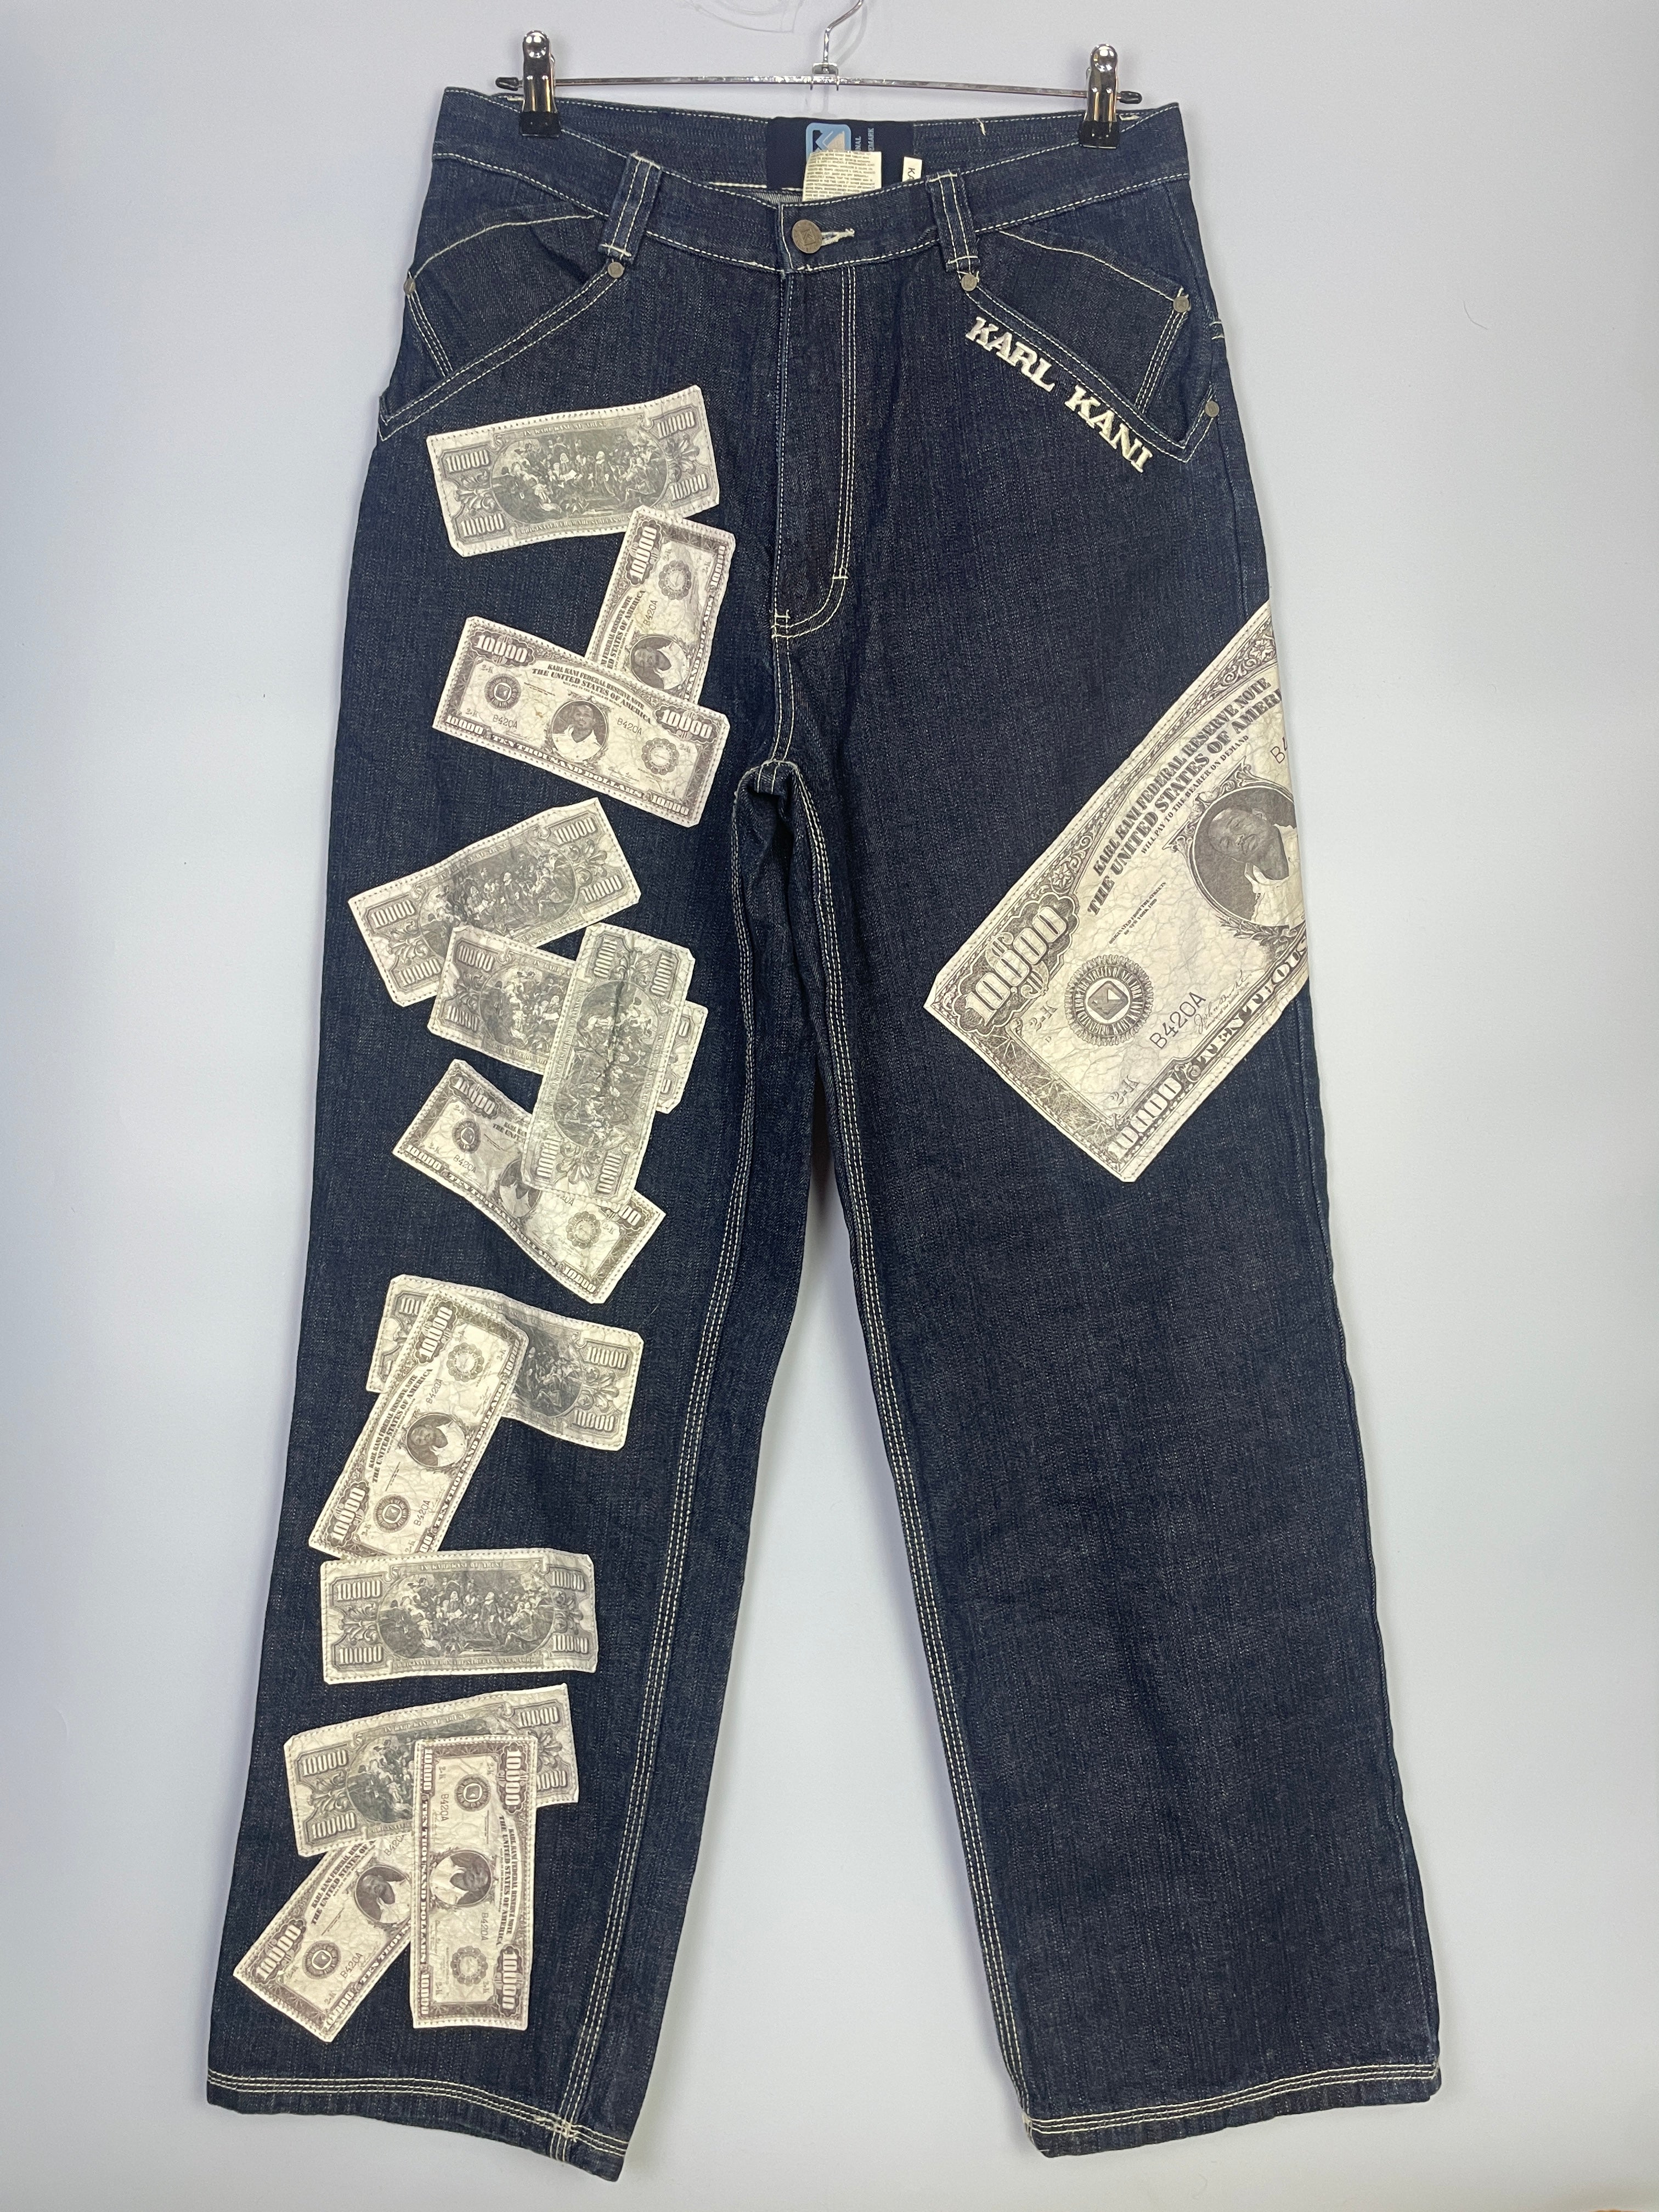 Karl Kani  baggy Jeans 30 mit Dollar Scheinen in sehr gutem Zustand